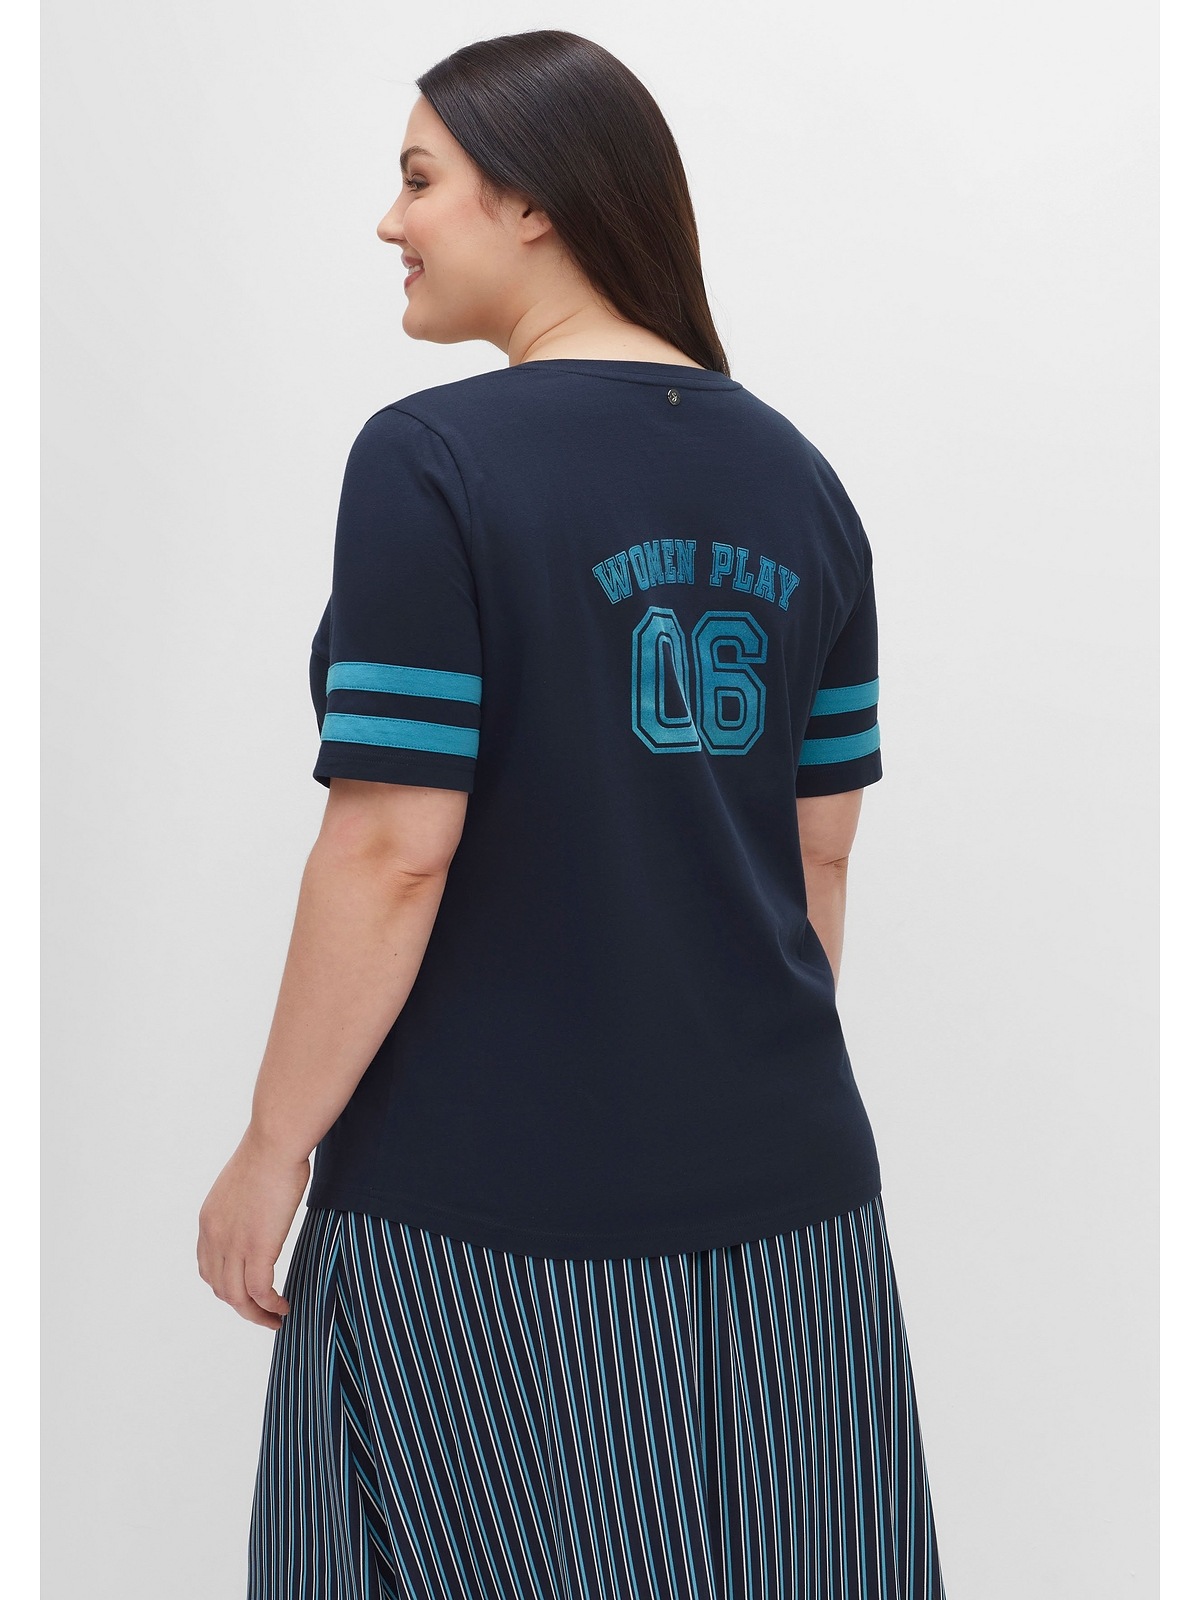 Sheego T-Shirt Große Größen im College-Stil mit Flockprint und Streifen